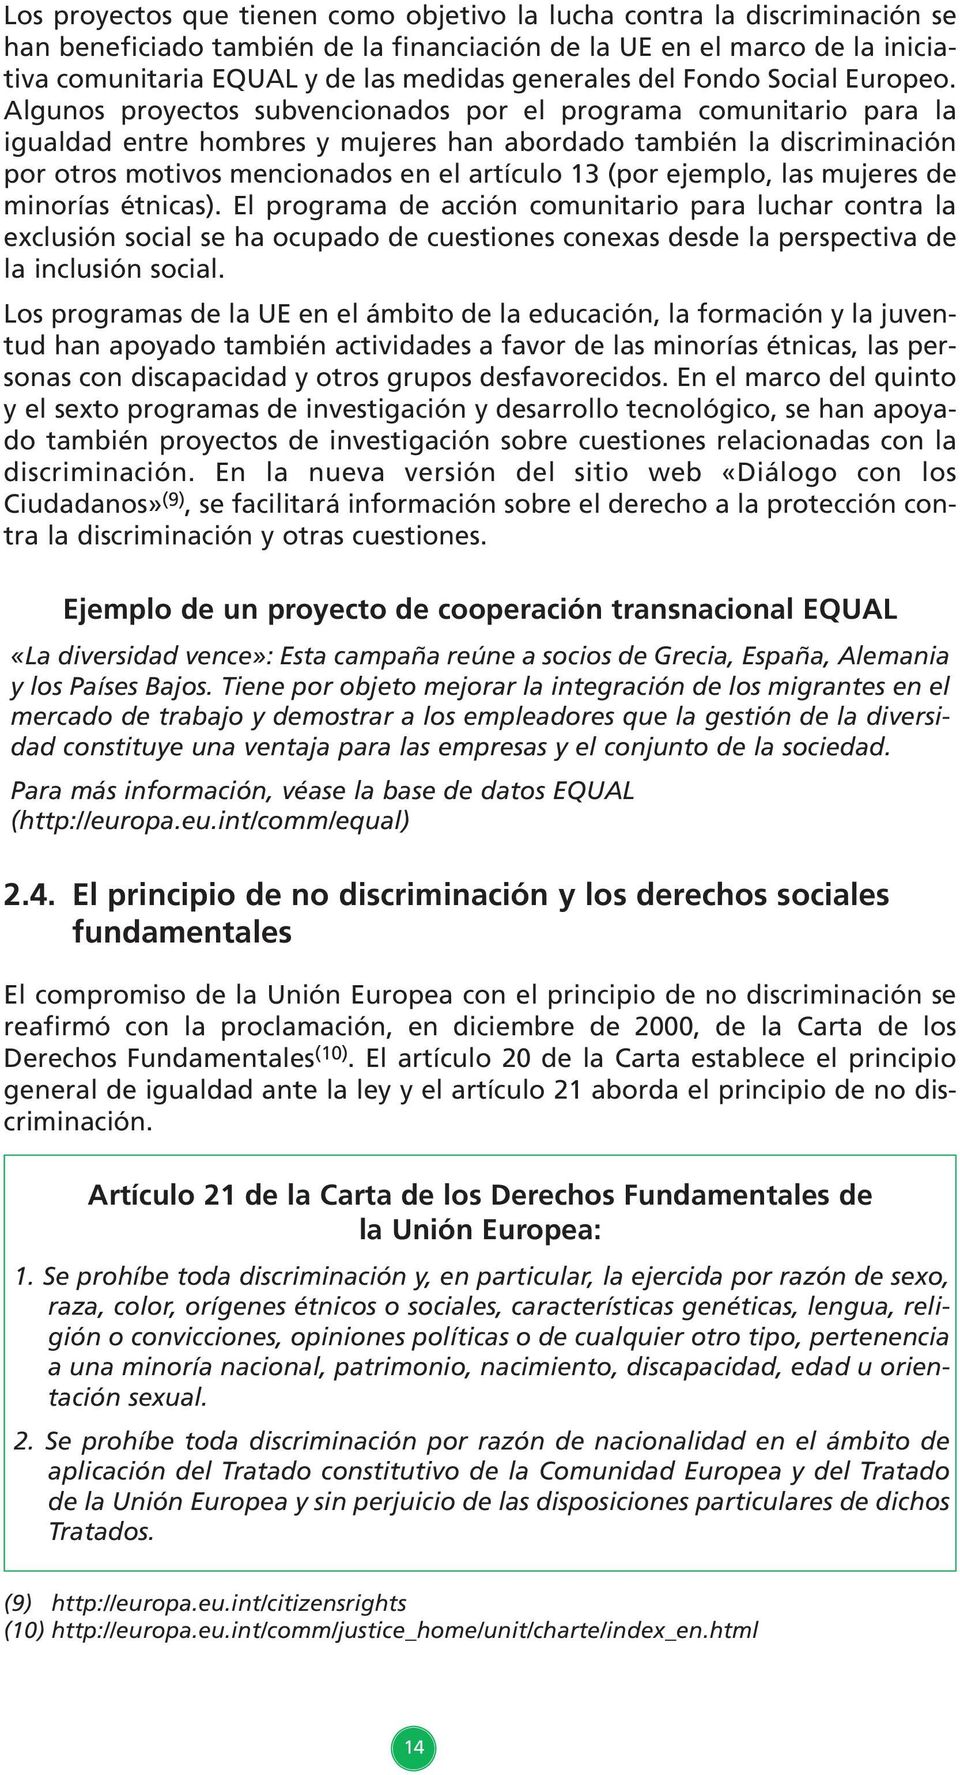 Algunos proyectos subvencionados por el programa comunitario para la igualdad entre hombres y mujeres han abordado también la discriminación por otros motivos mencionados en el artículo 13 (por